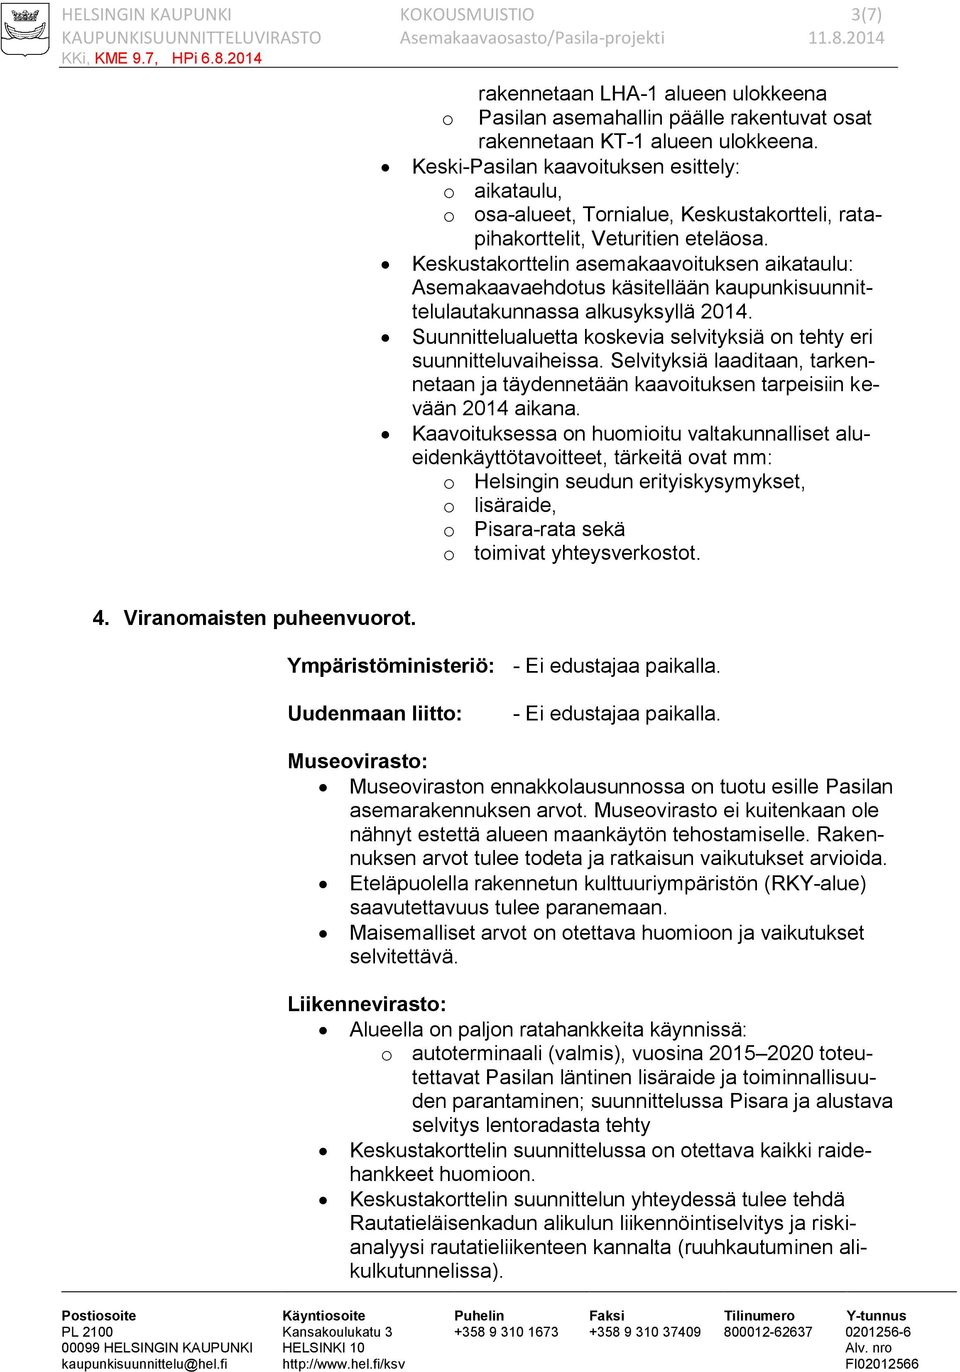 Keskustakorttelin asemakaavoituksen aikataulu: Asemakaavaehdotus käsitellään kaupunkisuunnittelulautakunnassa alkusyksyllä 2014.